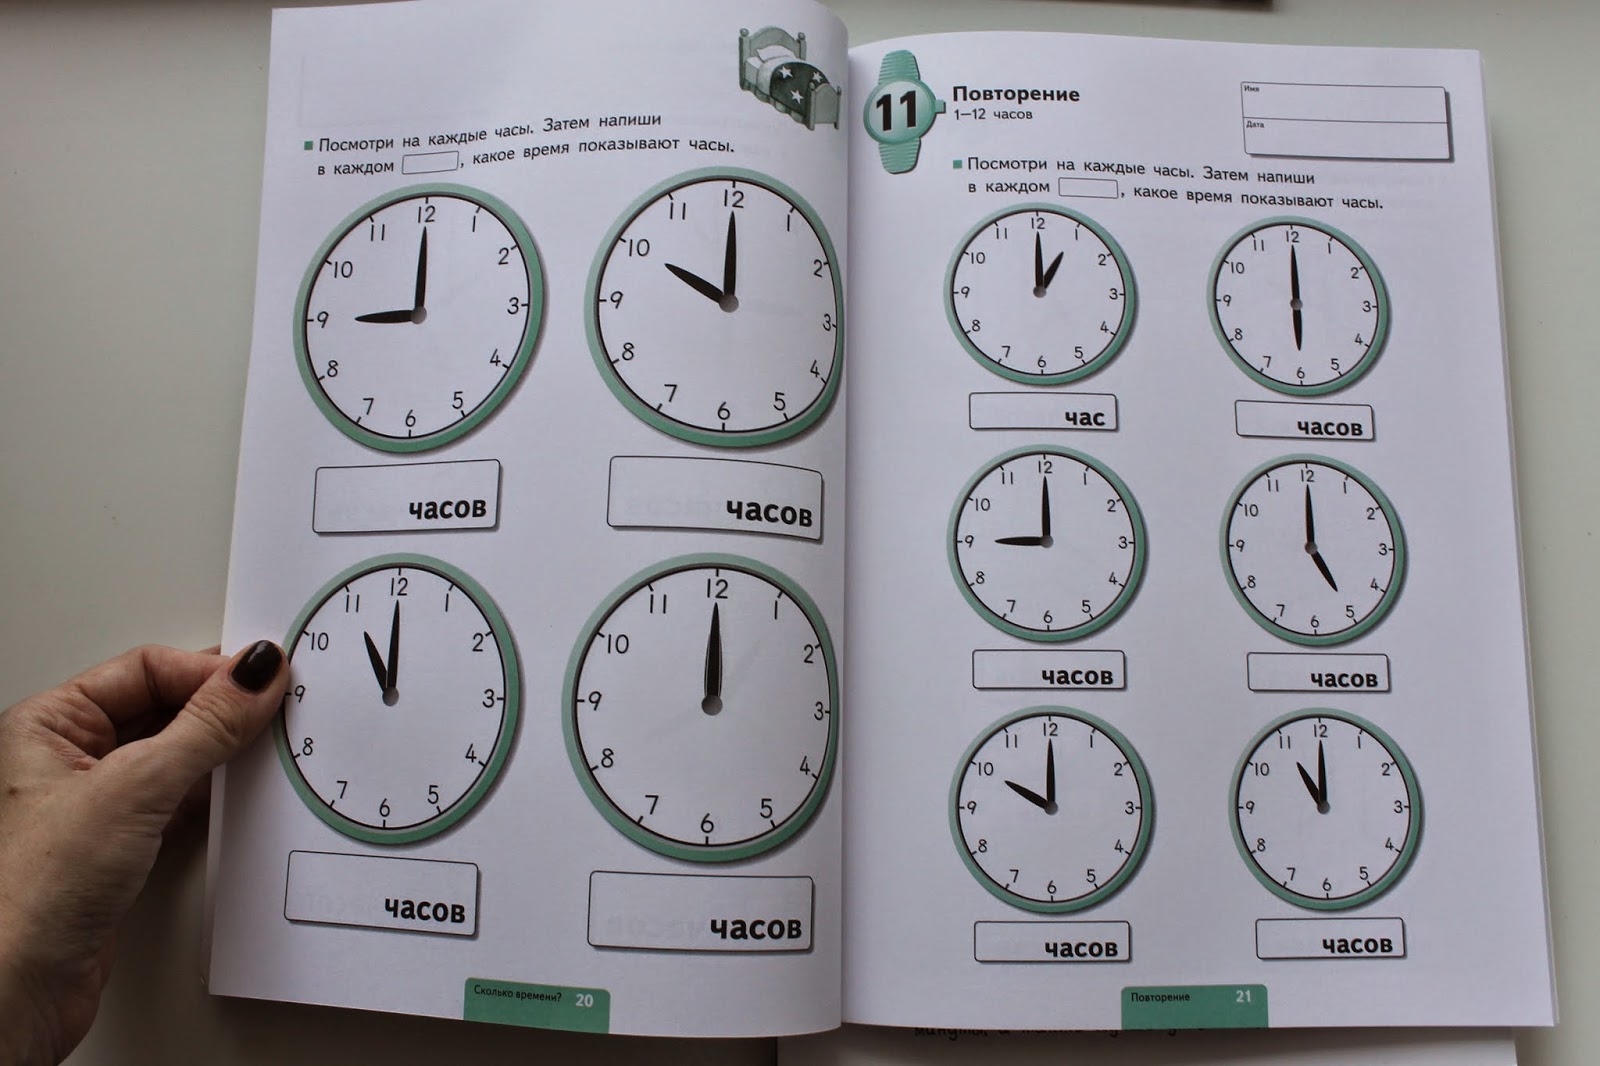 Сколько время час в архангельске. Часы повторение. Определяем время по часам. Повторение часов и минут. Карточки с часами для определения времени.